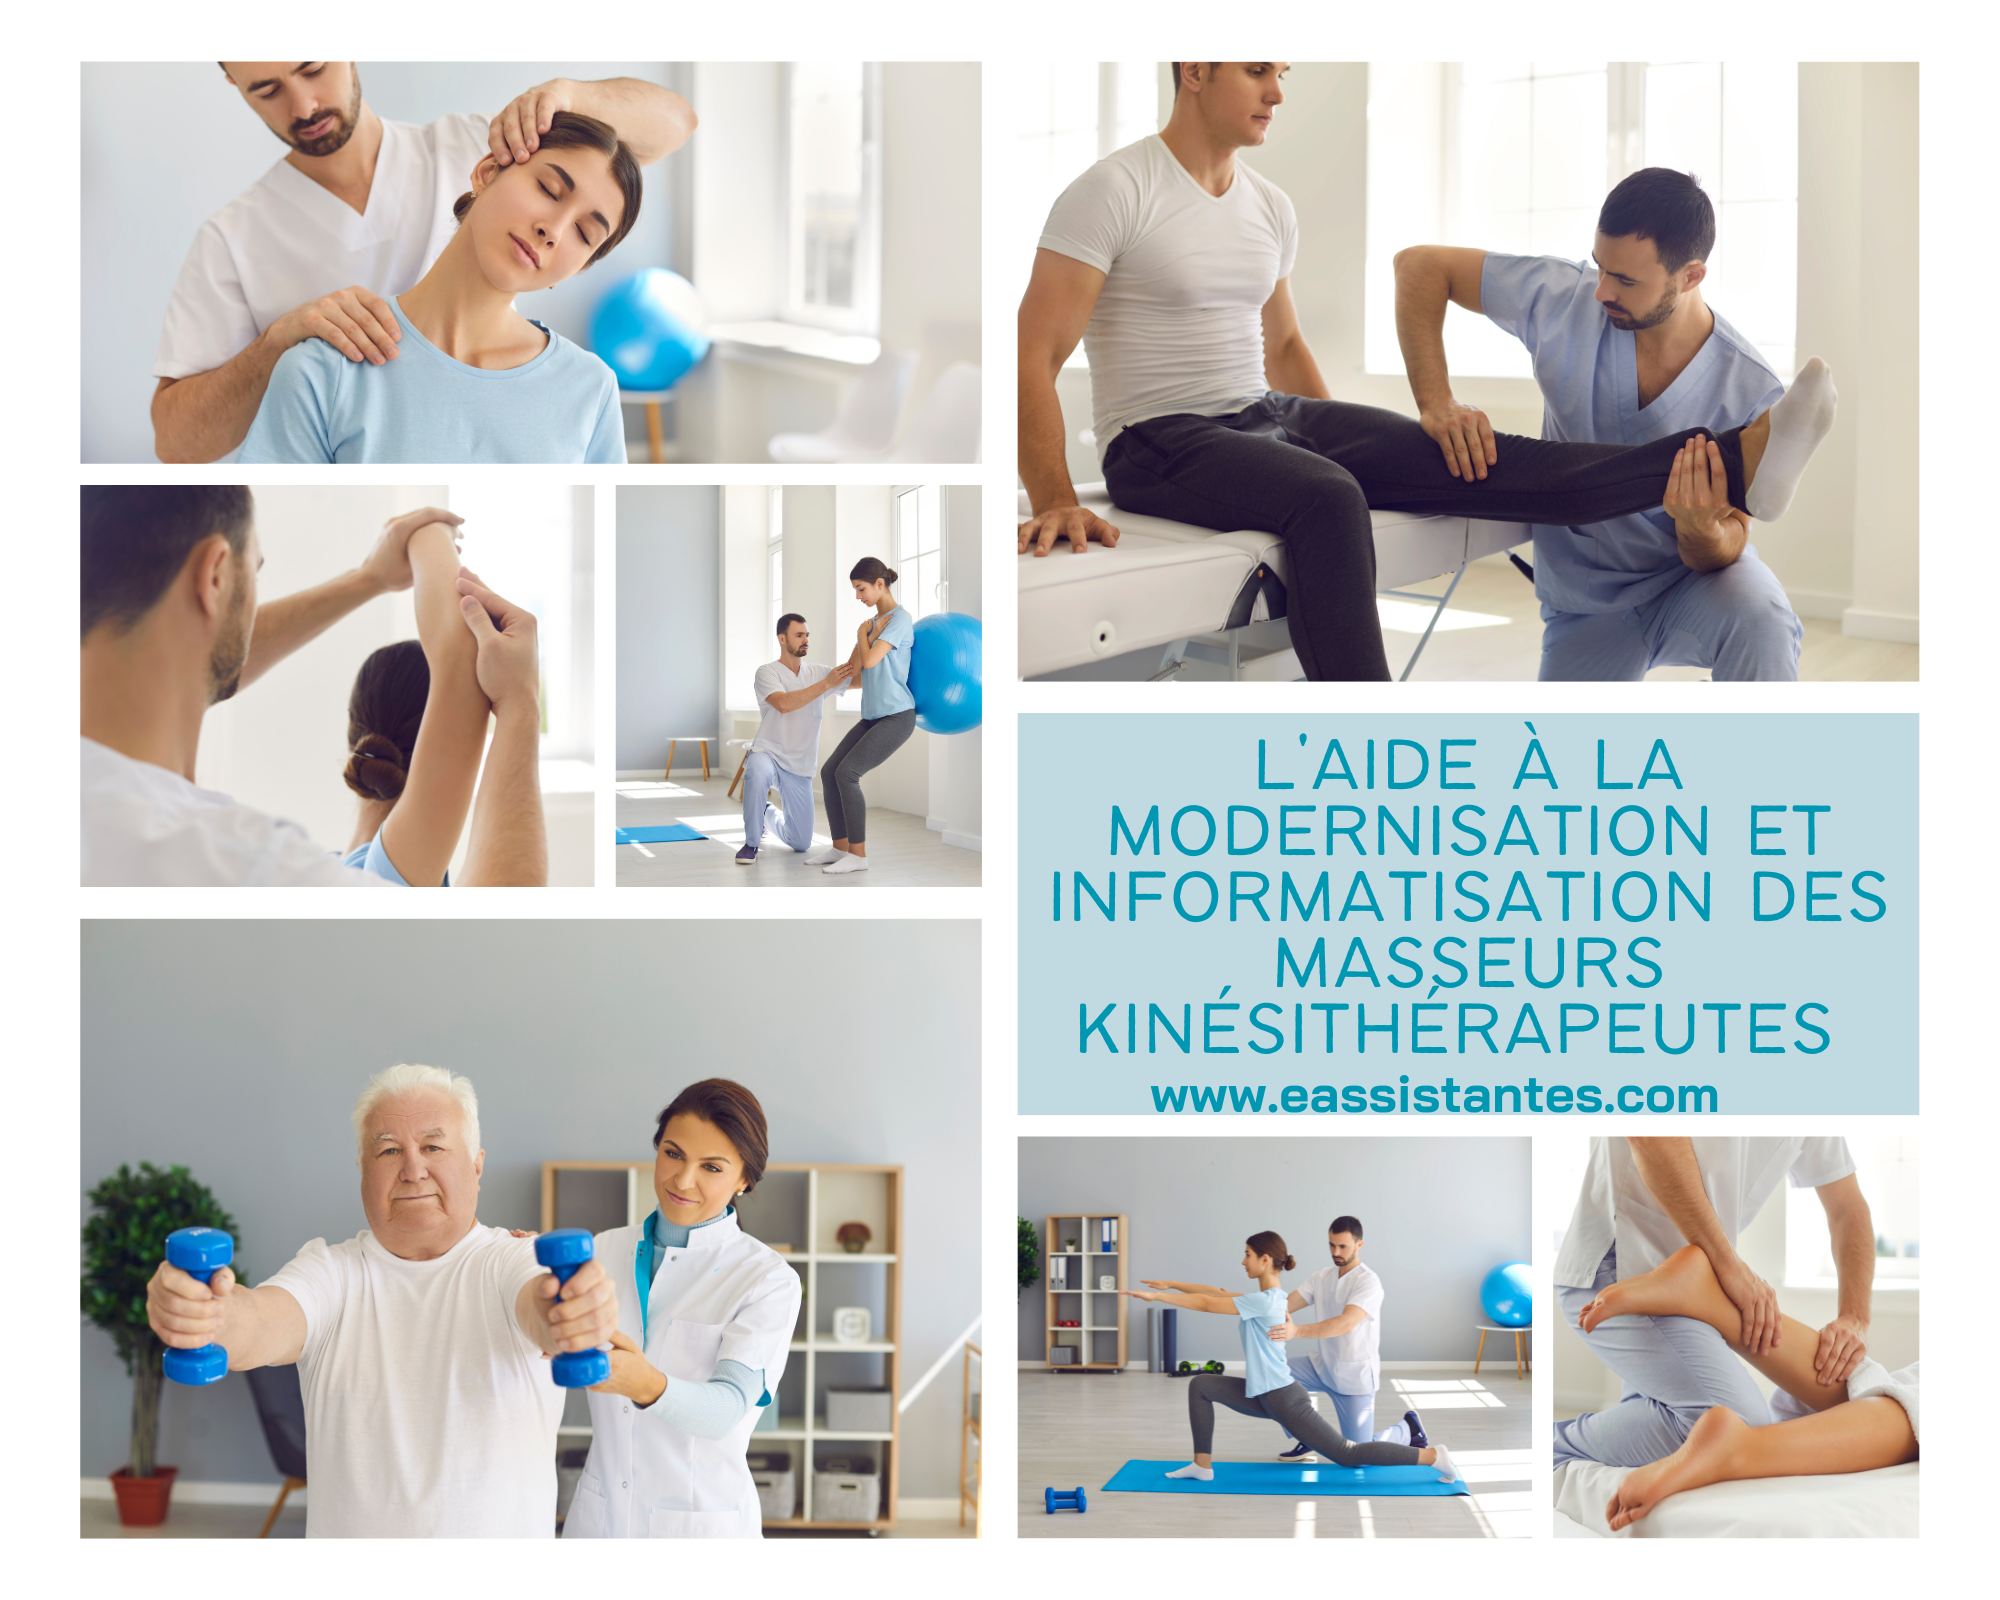 Le forfait d’aide à la modernisation et informatisation pour les masseurs kinésithérapeutes